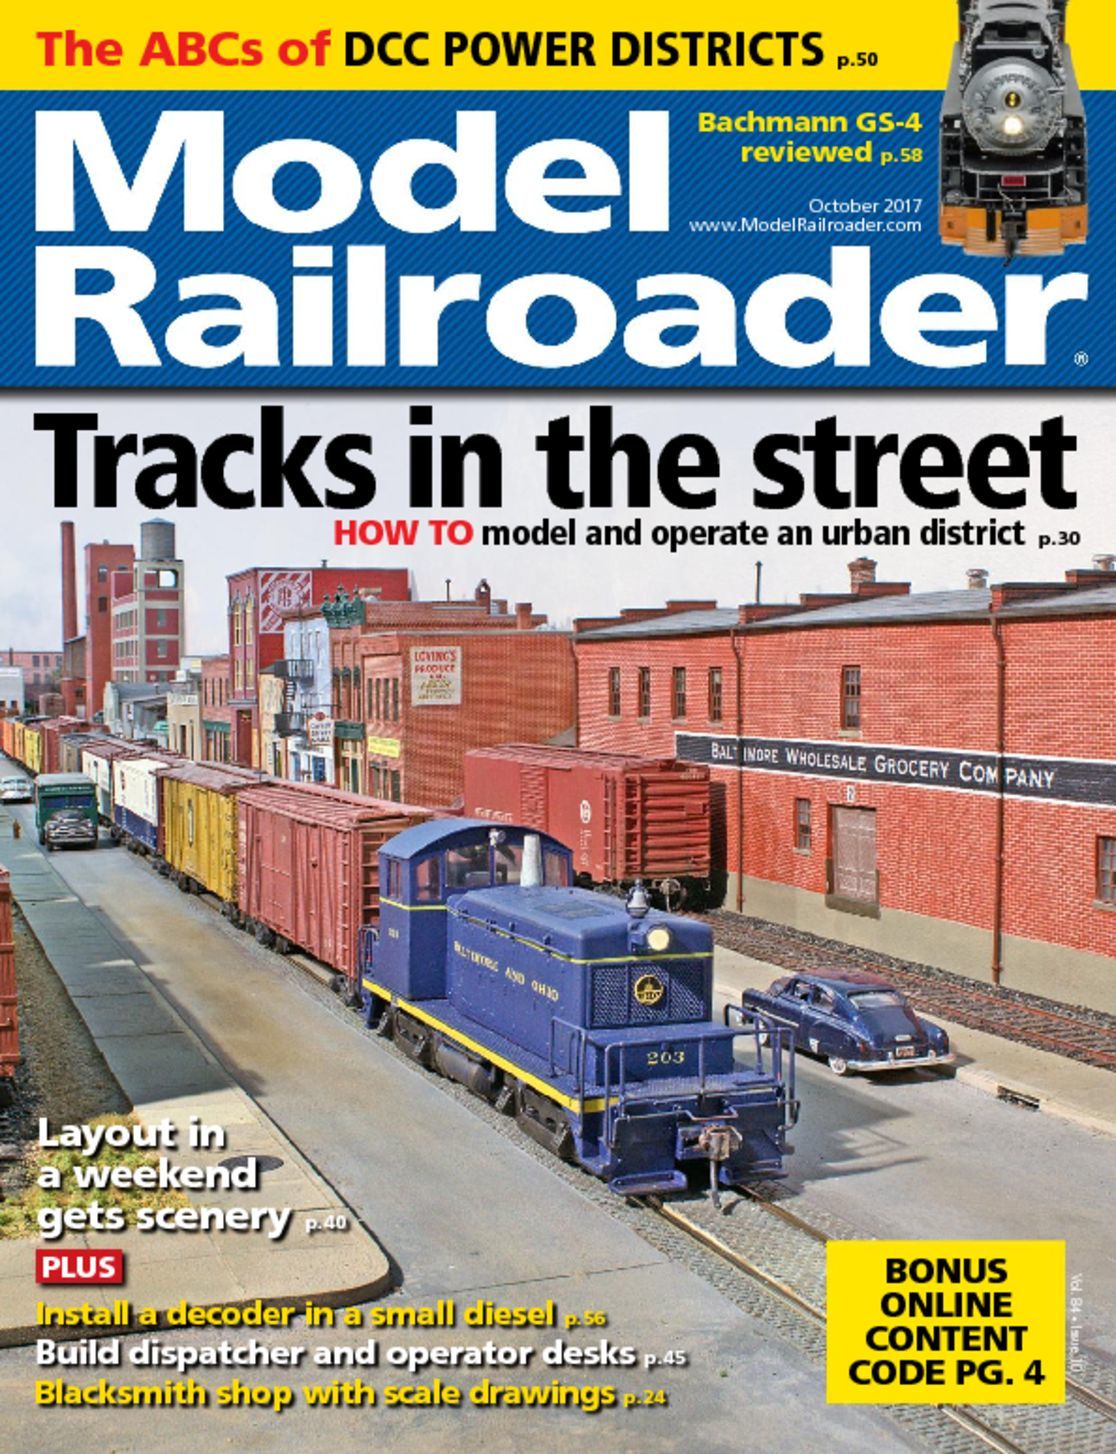 Model Railroader Magazine - DiscountMags.com